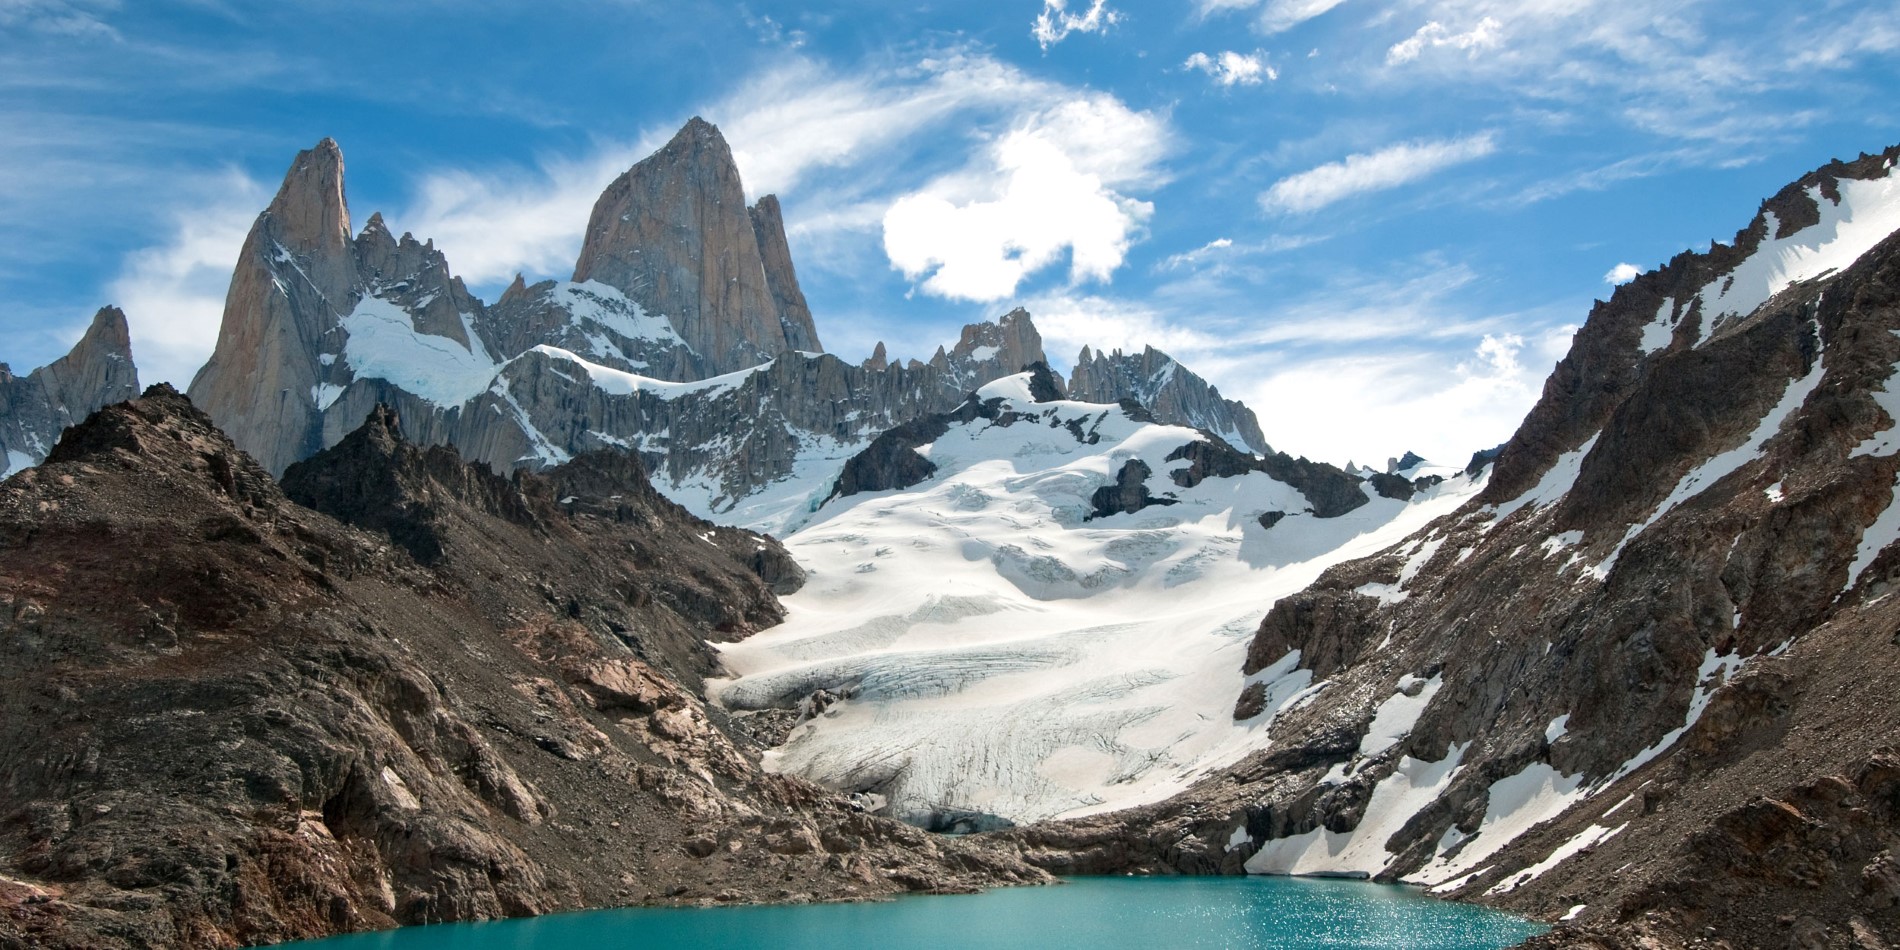 Monte Fitz Roy ligger i nærheten av El Chaltén landsby på grensen mellom Argentina og Chile